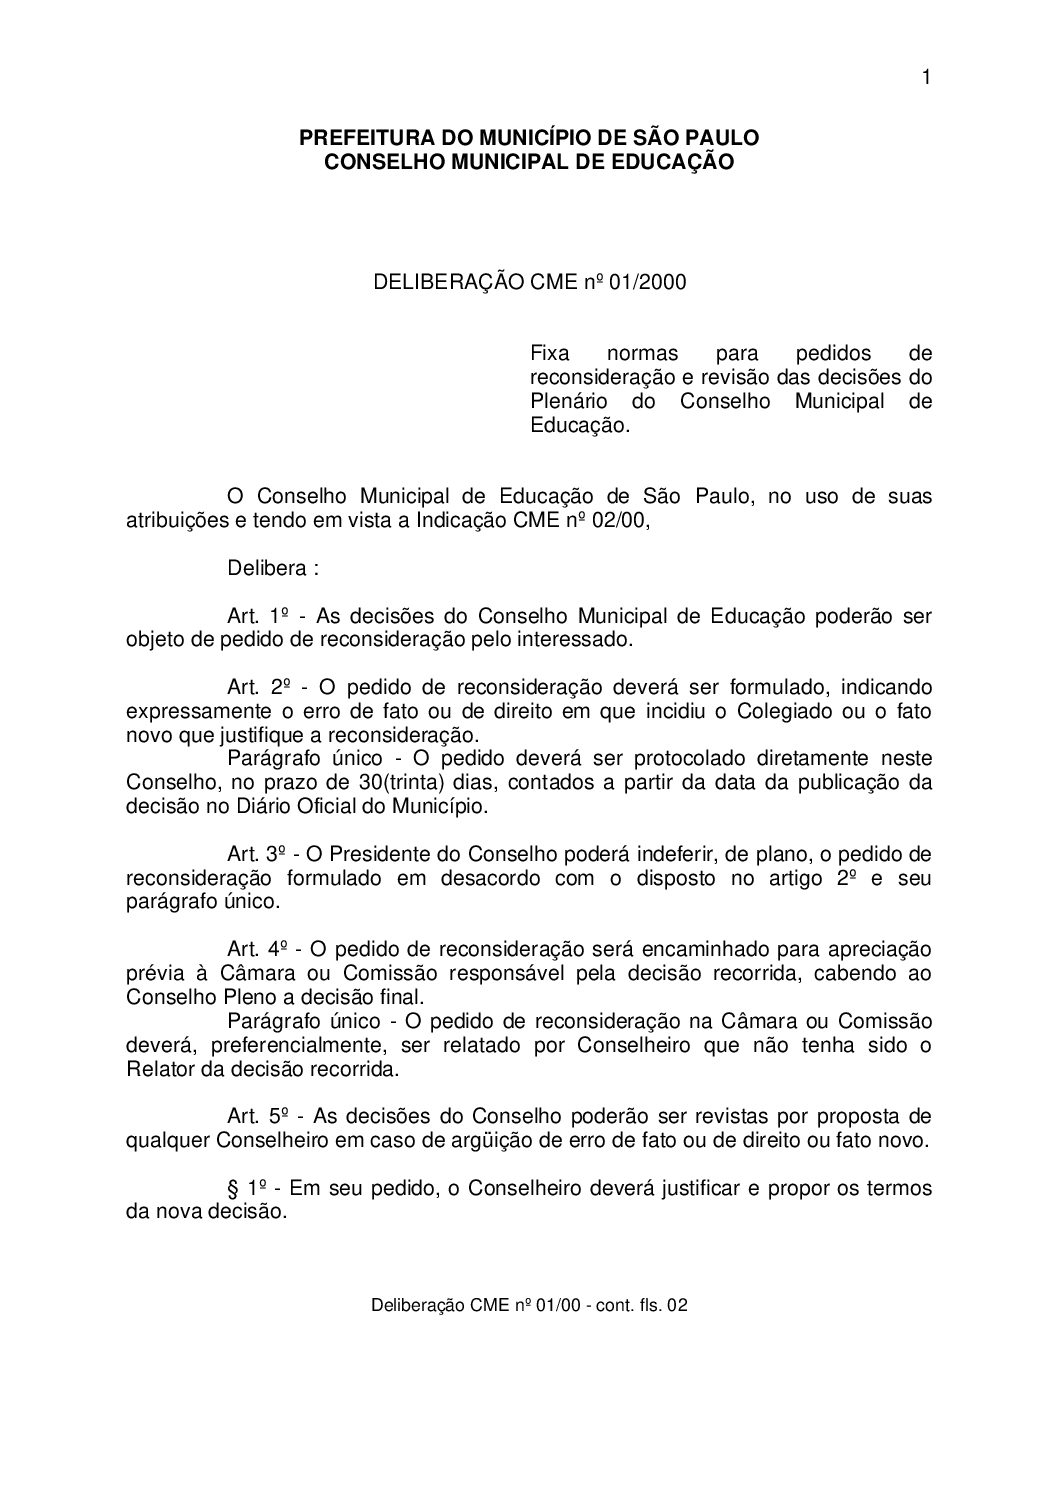 Deliberação CME nº 01/2000 - Fixa normas para pedidos de reconsideração e revisão das decisões do Plenário do Conselho Municipal de Educação